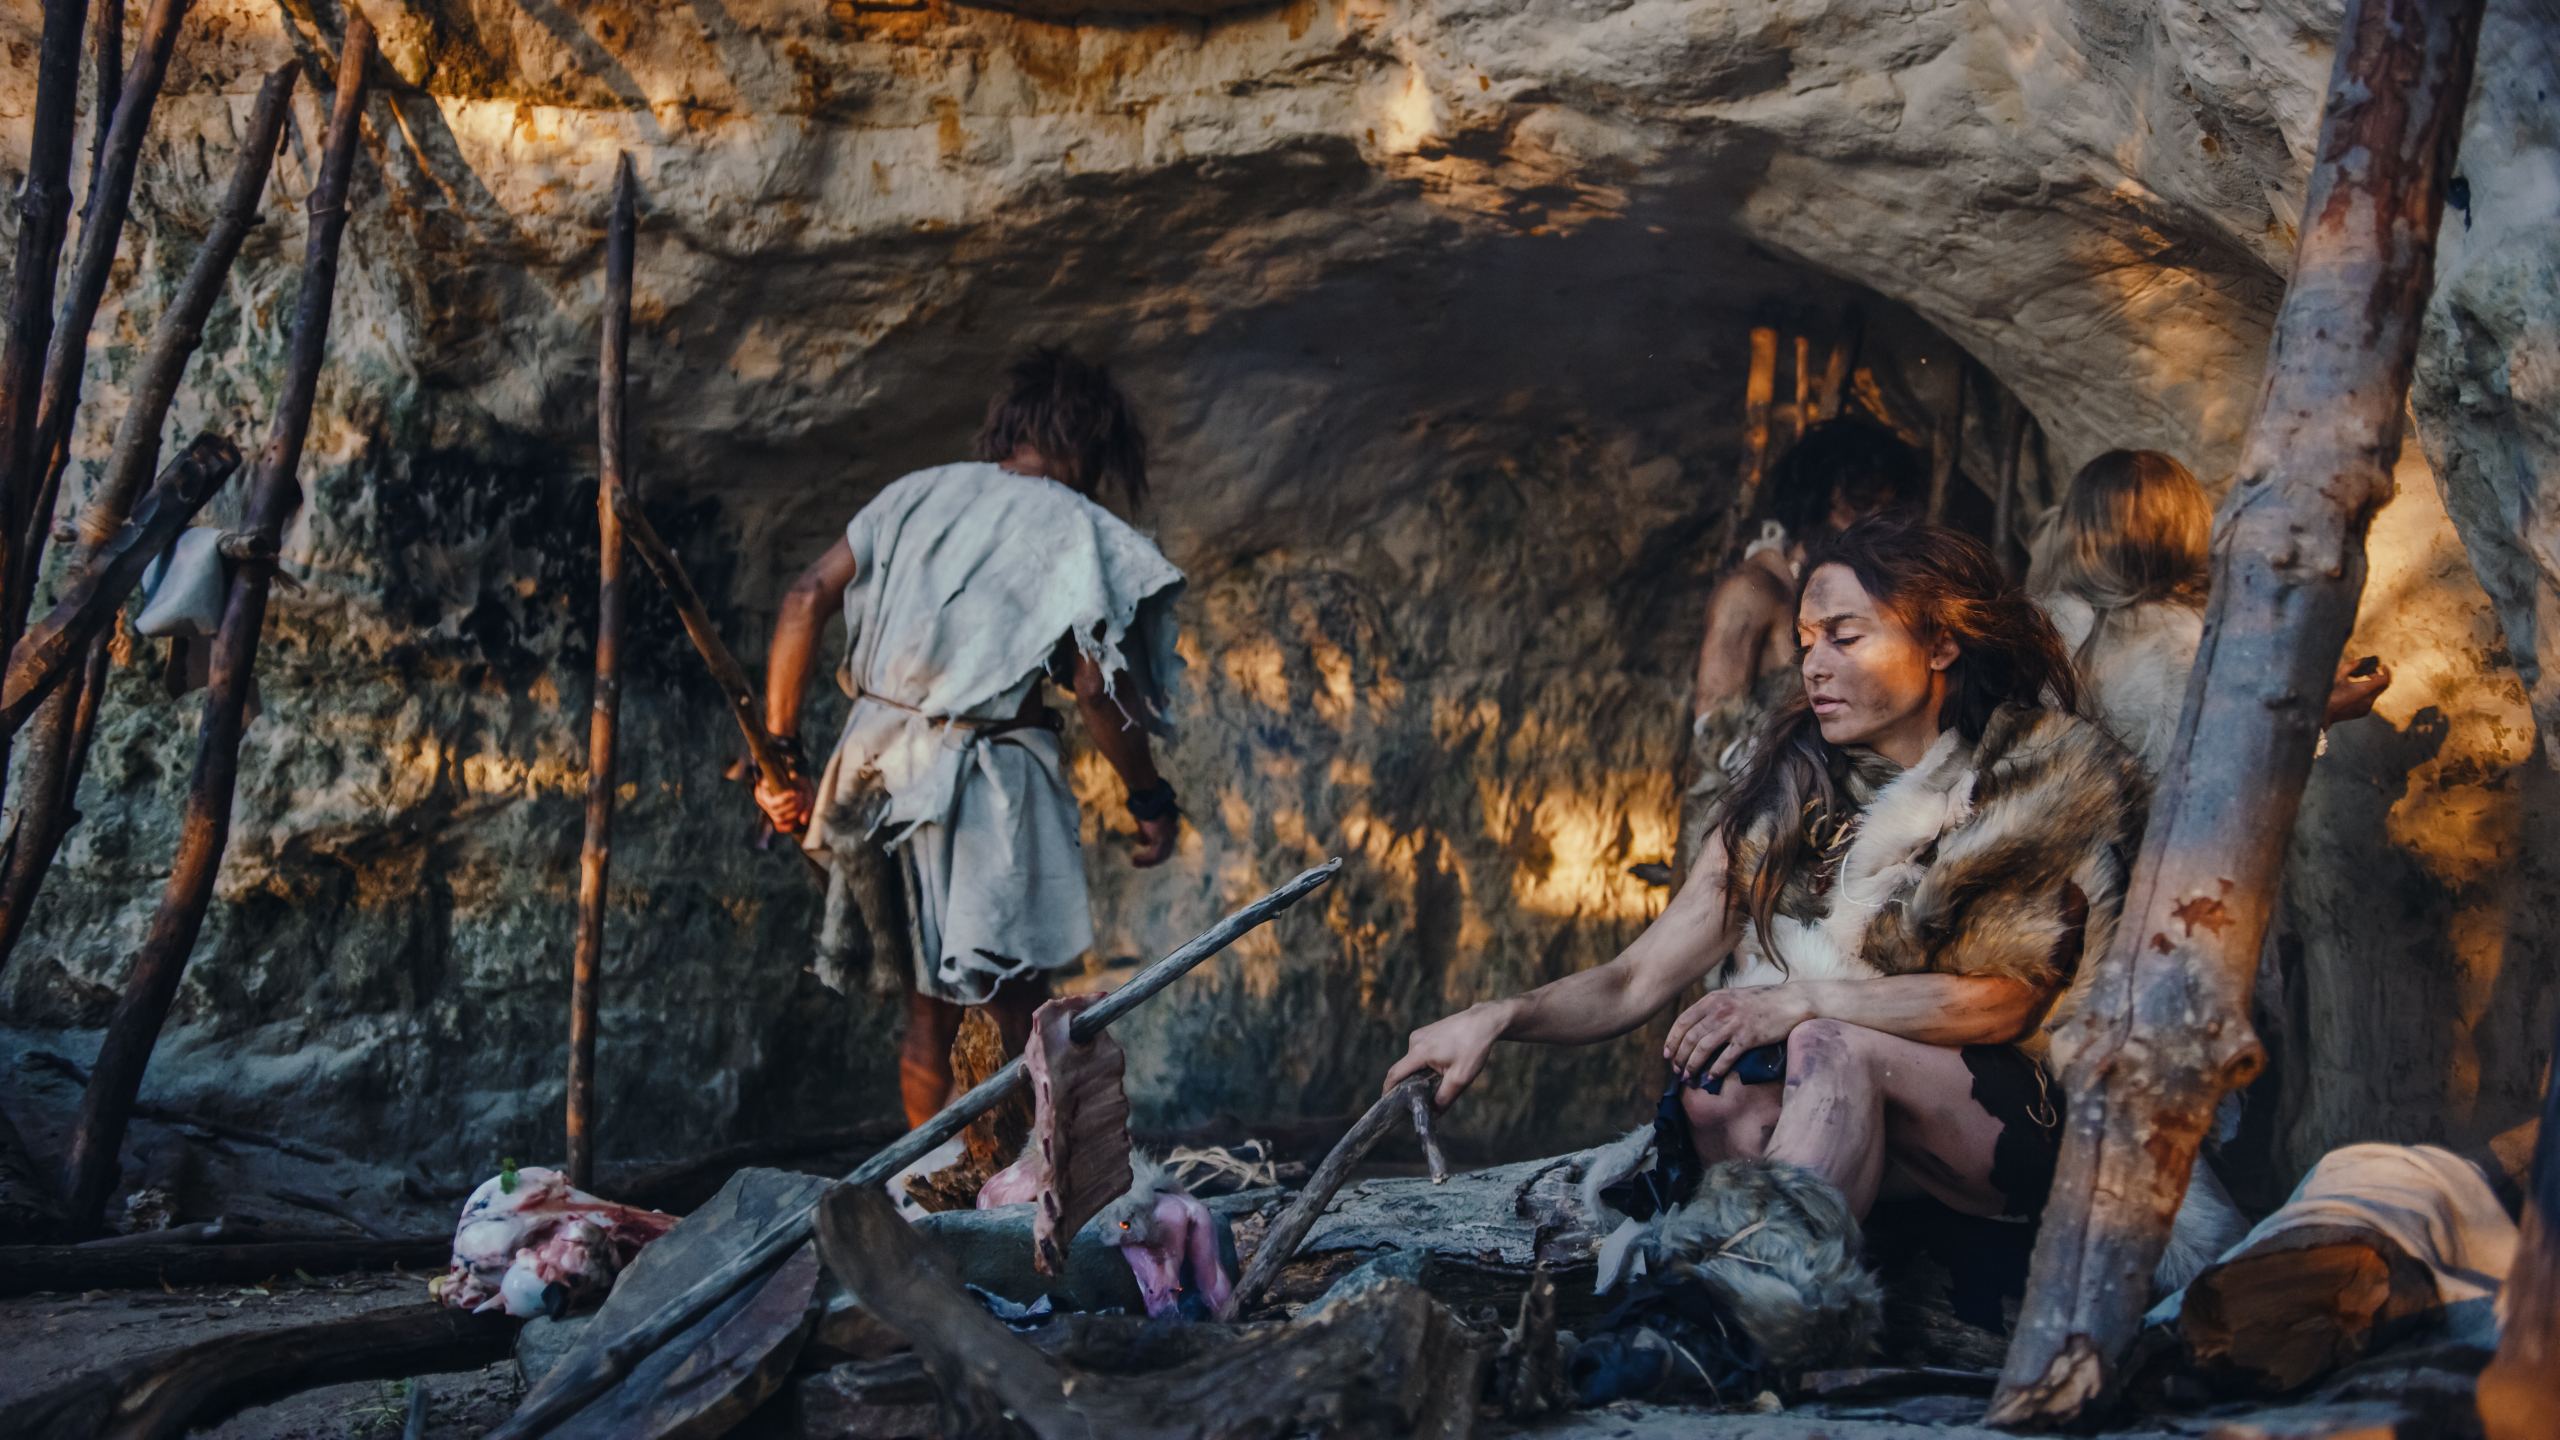 Rekreačná snímka neandertálskej rodiny Homo Sapiens. Kmeň lovcov a zberačov so zvieracou kožou žije v jaskyni. Vodca prináša zvieraciu korisť z lovu, žena varí jedlo na ohni, dievča kreslí na Walsa vytvára umenie.